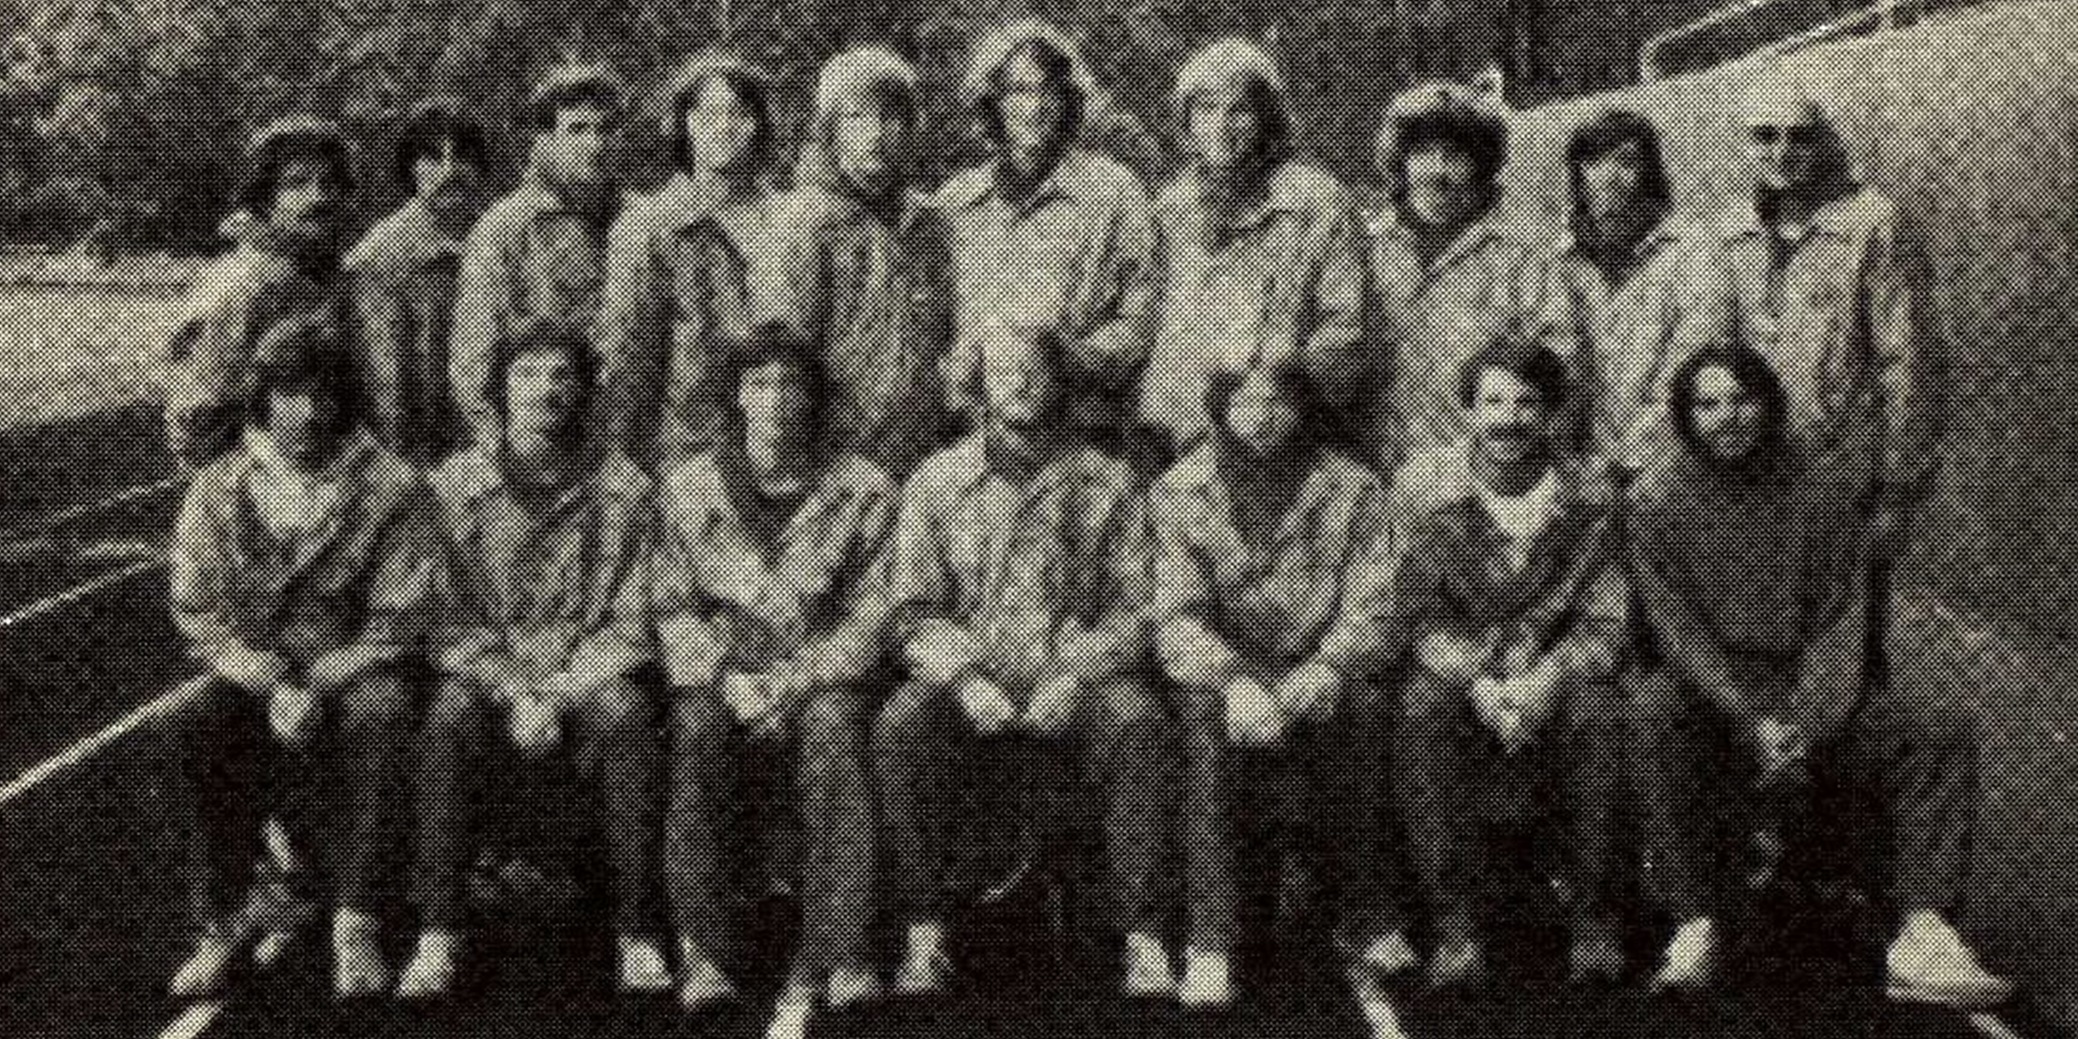 1979 Men's Cross Country